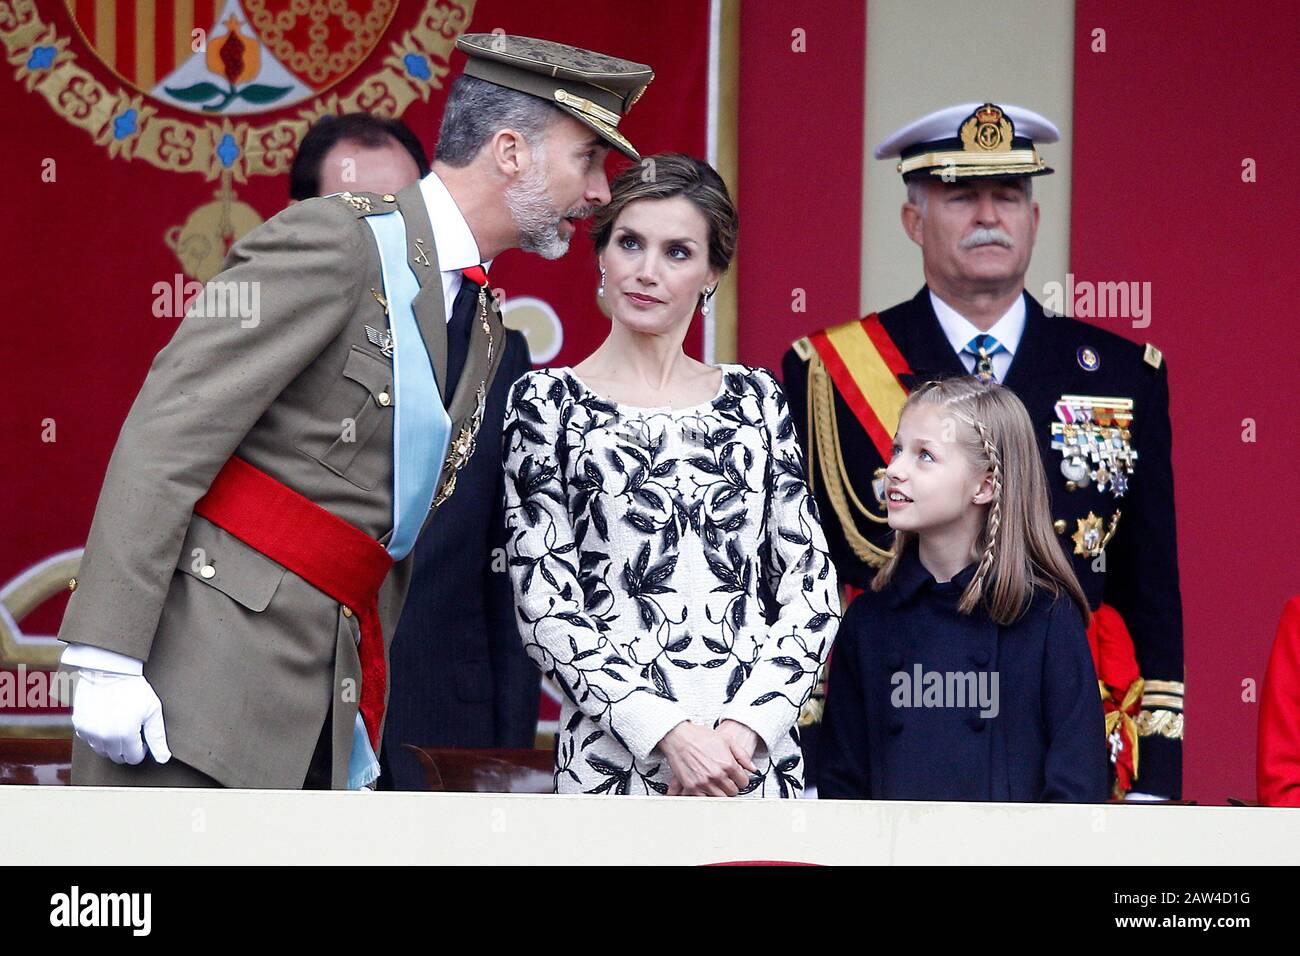 (L-R) König Felipe VI. Von Spanien, Königin Letizia von Spanien und Prinzessin Leonor von Spanien nehmen an der Militärparade des nationalen Tages Teil. Oktober 2016. (ALTERPH Stockfoto